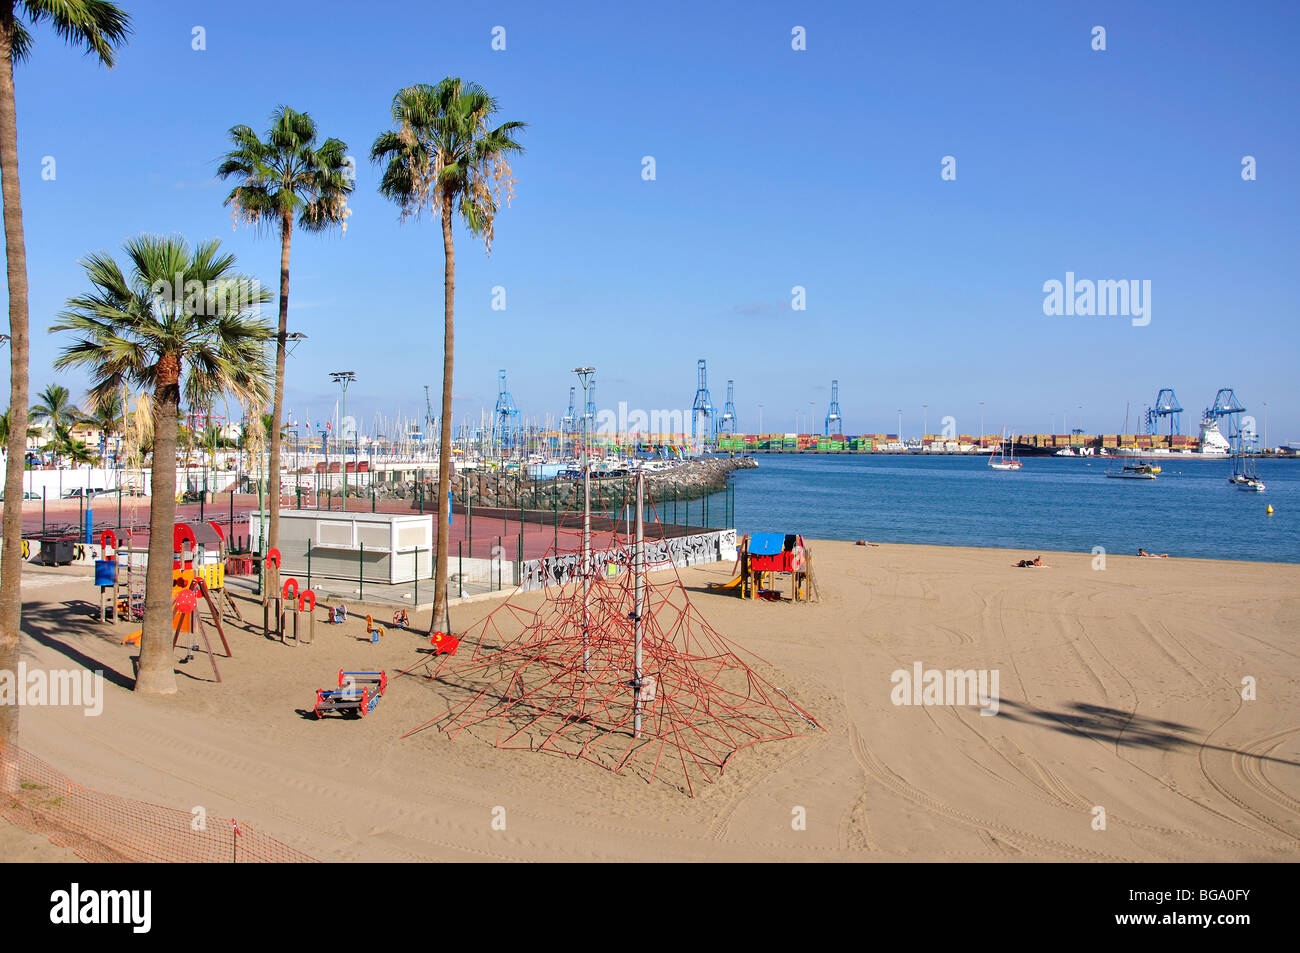 Playa de las Alcaravaneras, Las Palmas de Canaria, Las Palmas Municipality, Gran Canaria, Canary Islands, Spain Stock Photo